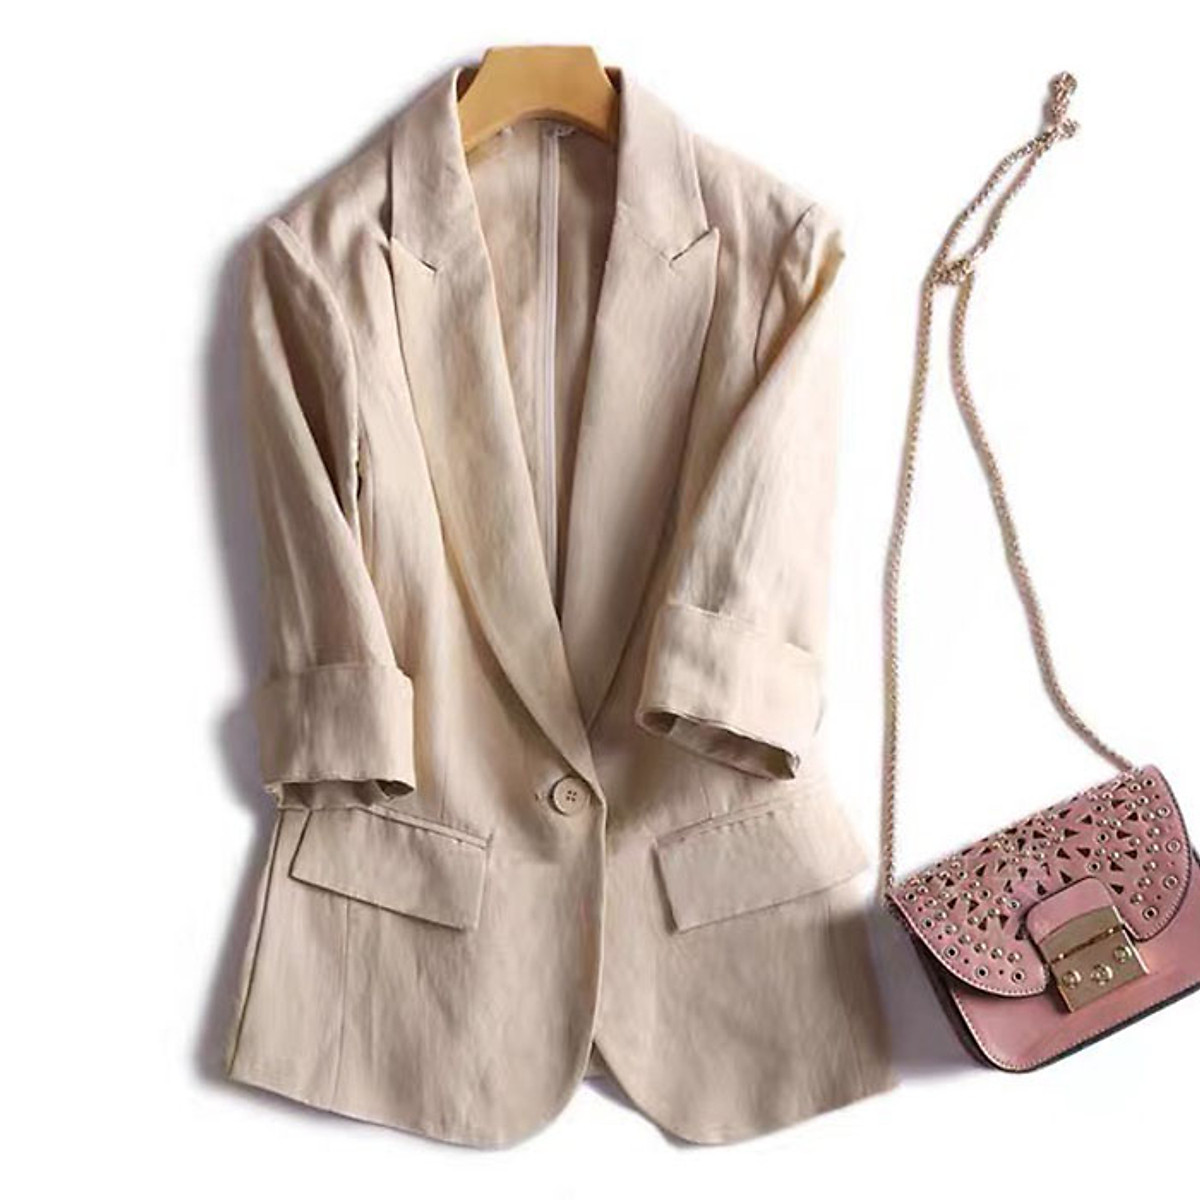 Áo vest blazer Linen nữ tay lỡ sắn túi bổ nắp trẻ trung chất vải linen bột Premium có 2 màu lựa chọn (Hồng phấn Be)